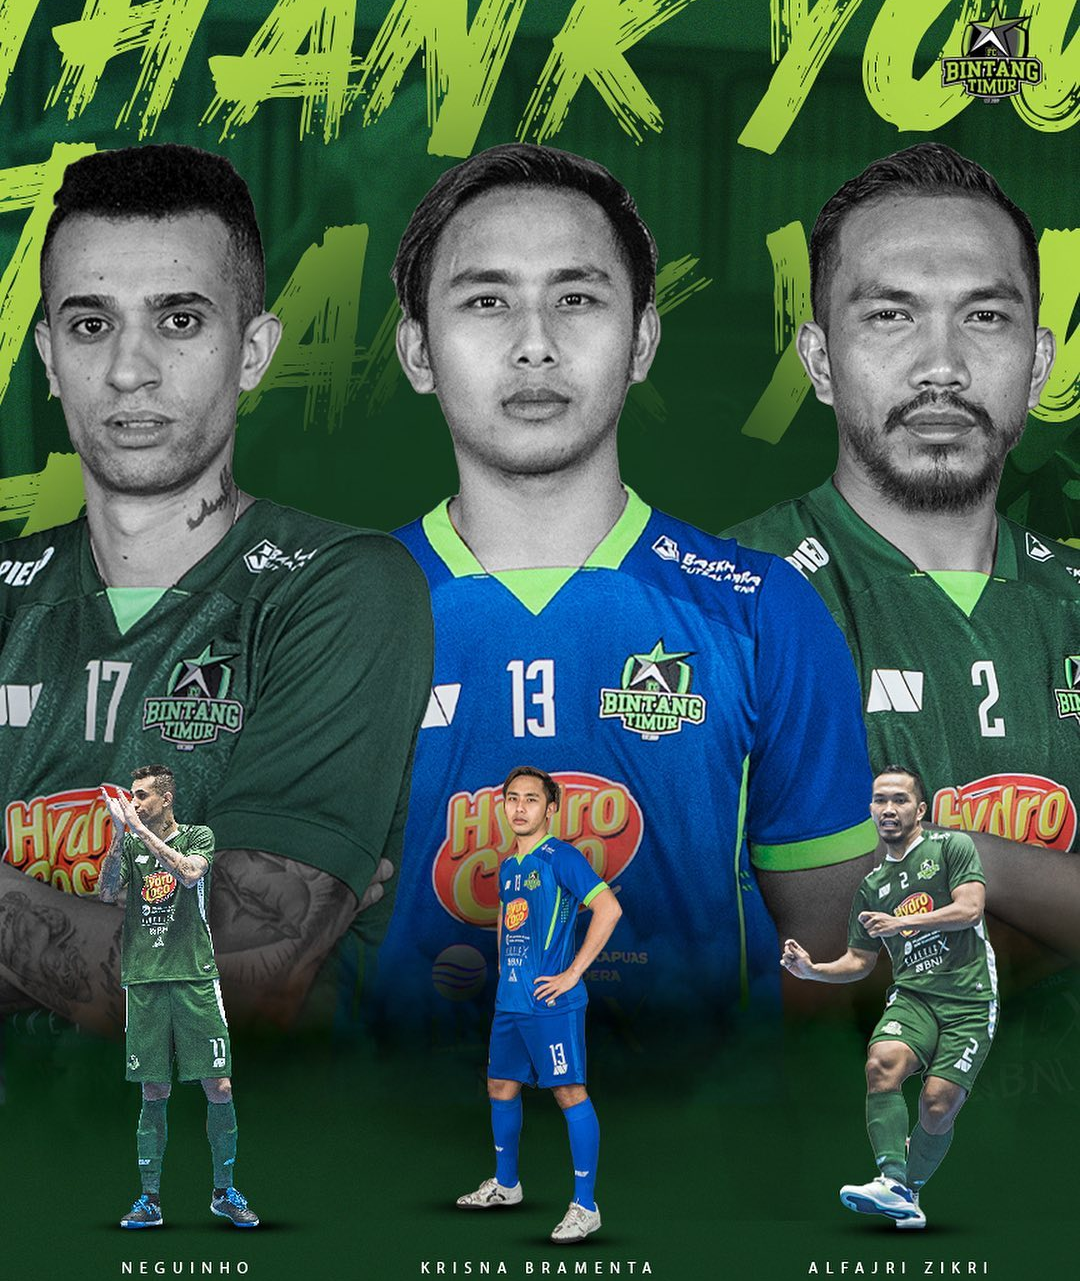 Bursa Transfer Futsal: Bintang Timur Resmi Lepas Pemain Asing dan Dua Pilar Lainnya